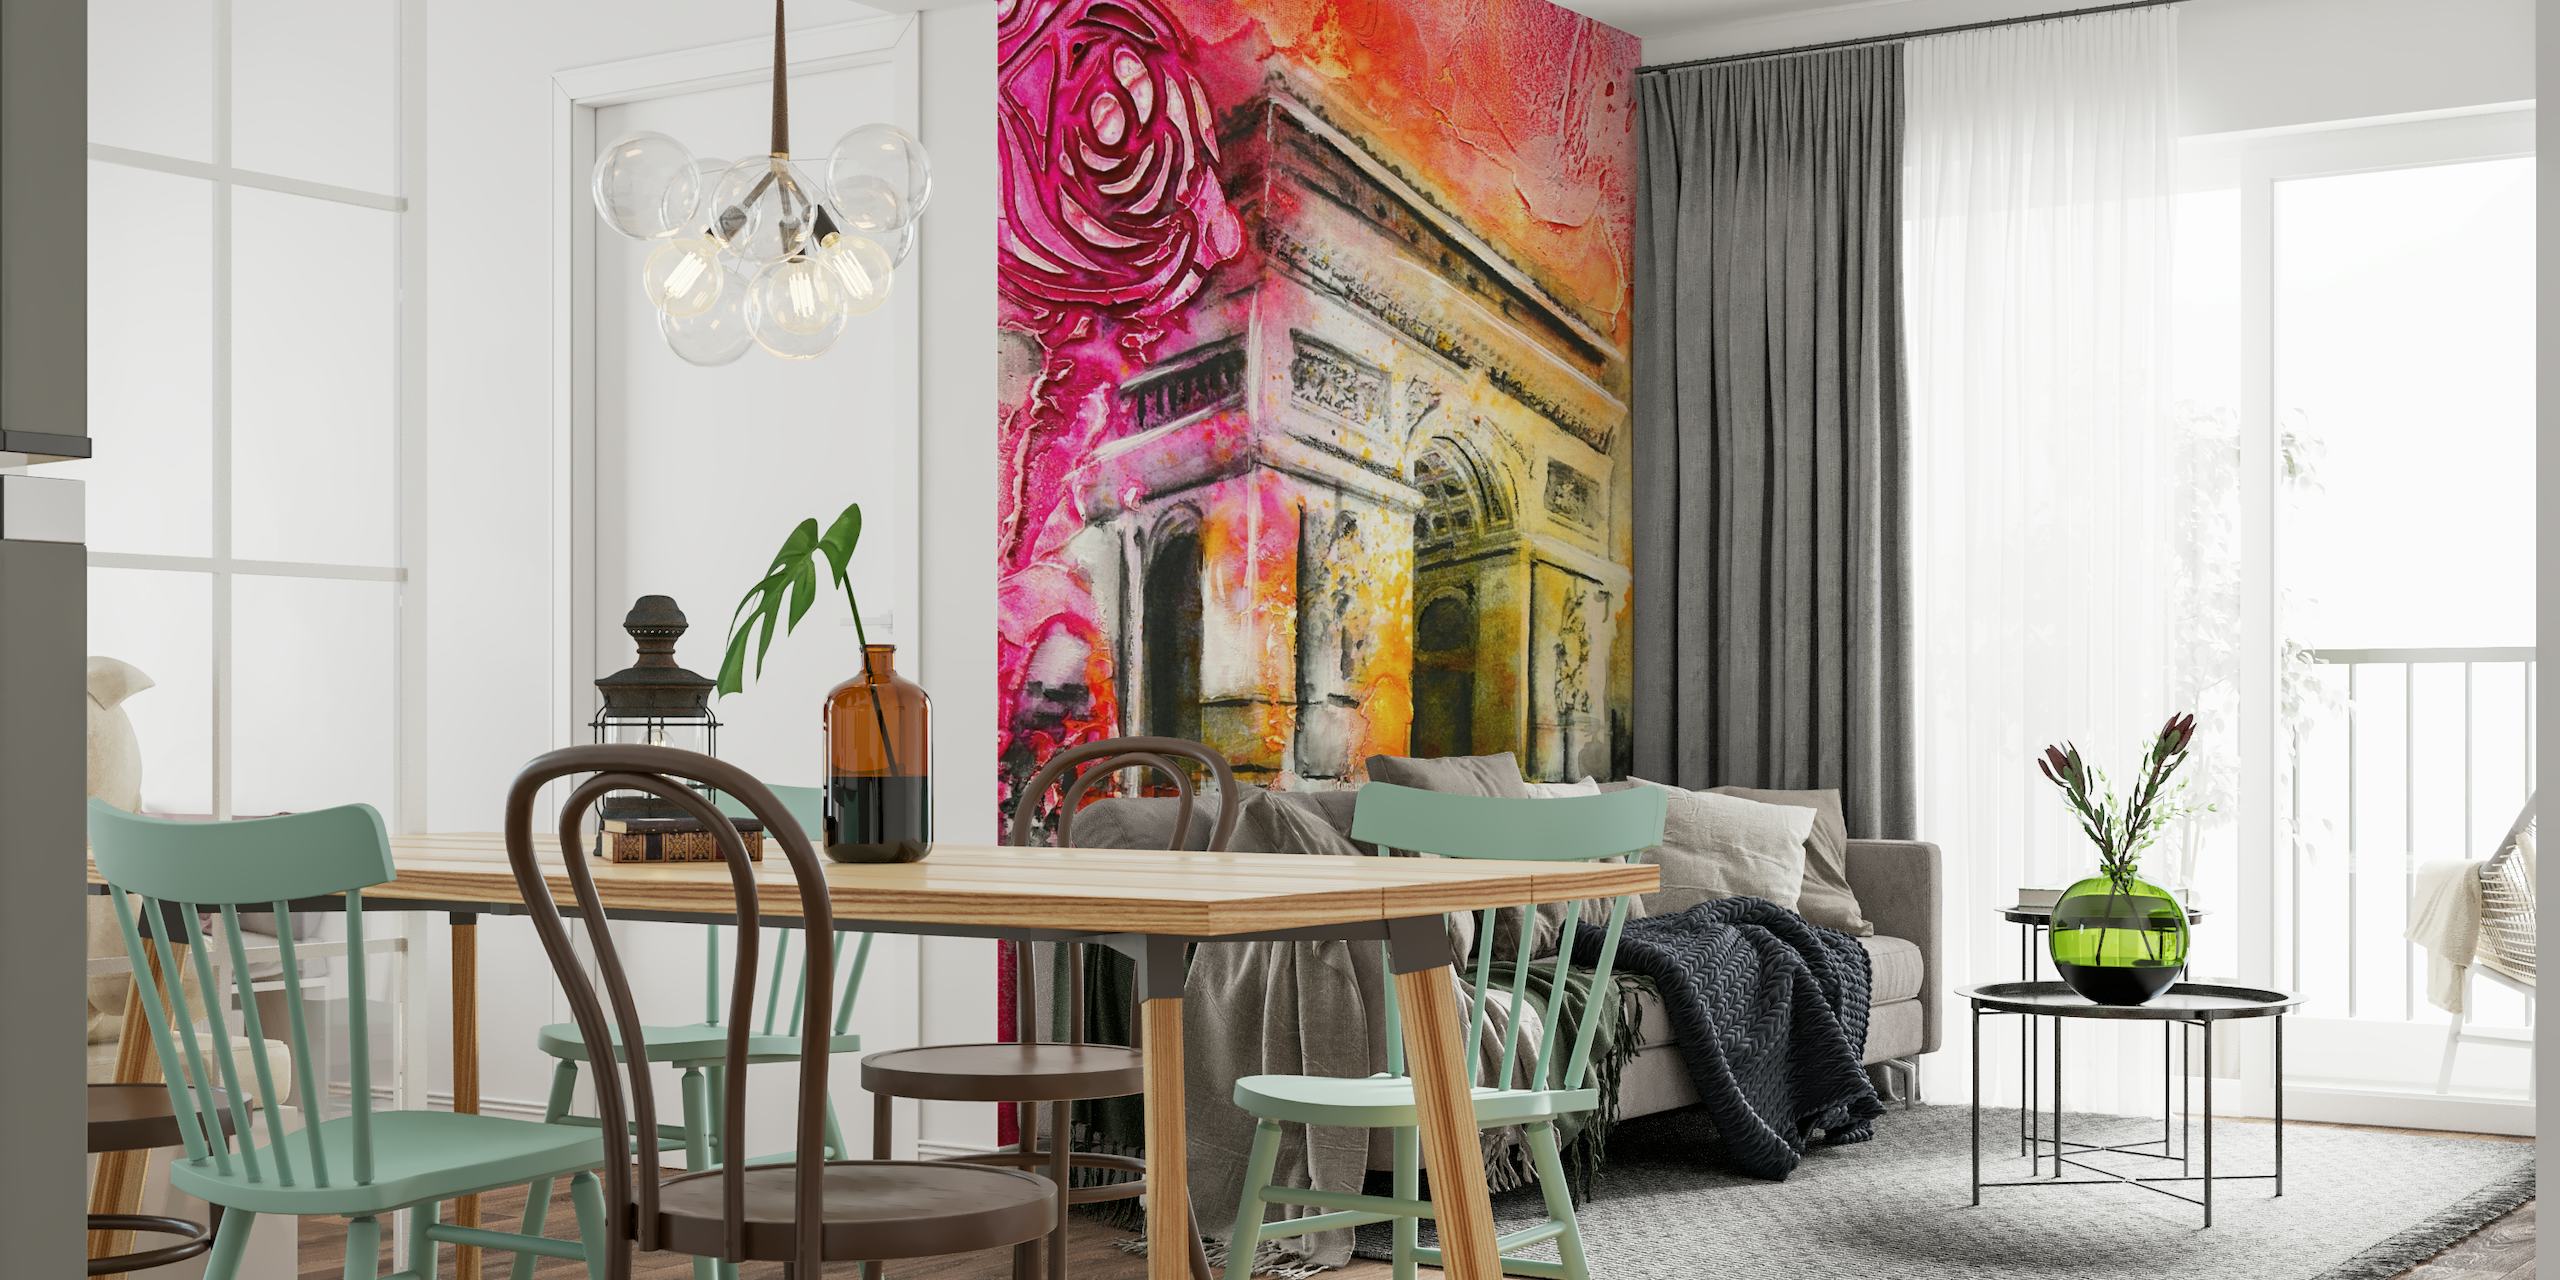 Murale expressive et colorée d'inspiration parisienne représentant l'Arc de Triomphe dans des roses et des rouges audacieux.